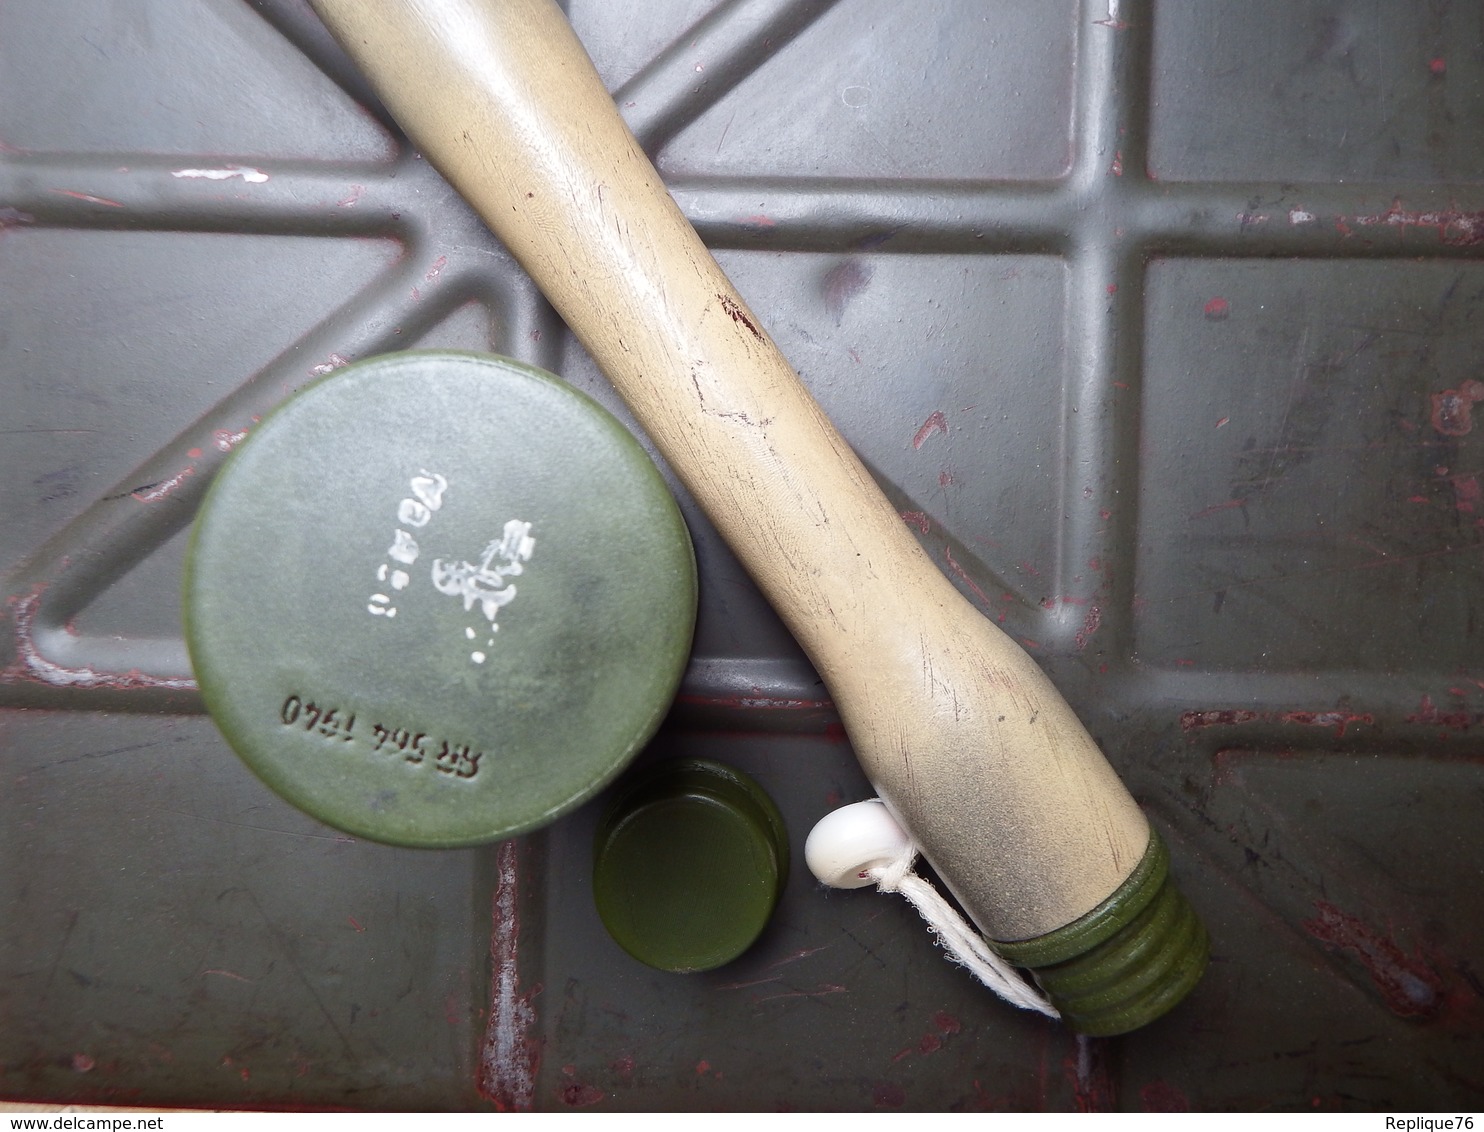 Réplique/reproduction Grenade Stielhandgranate 24 "presse Purée" WW2 échelle 1:1 - 1939-45